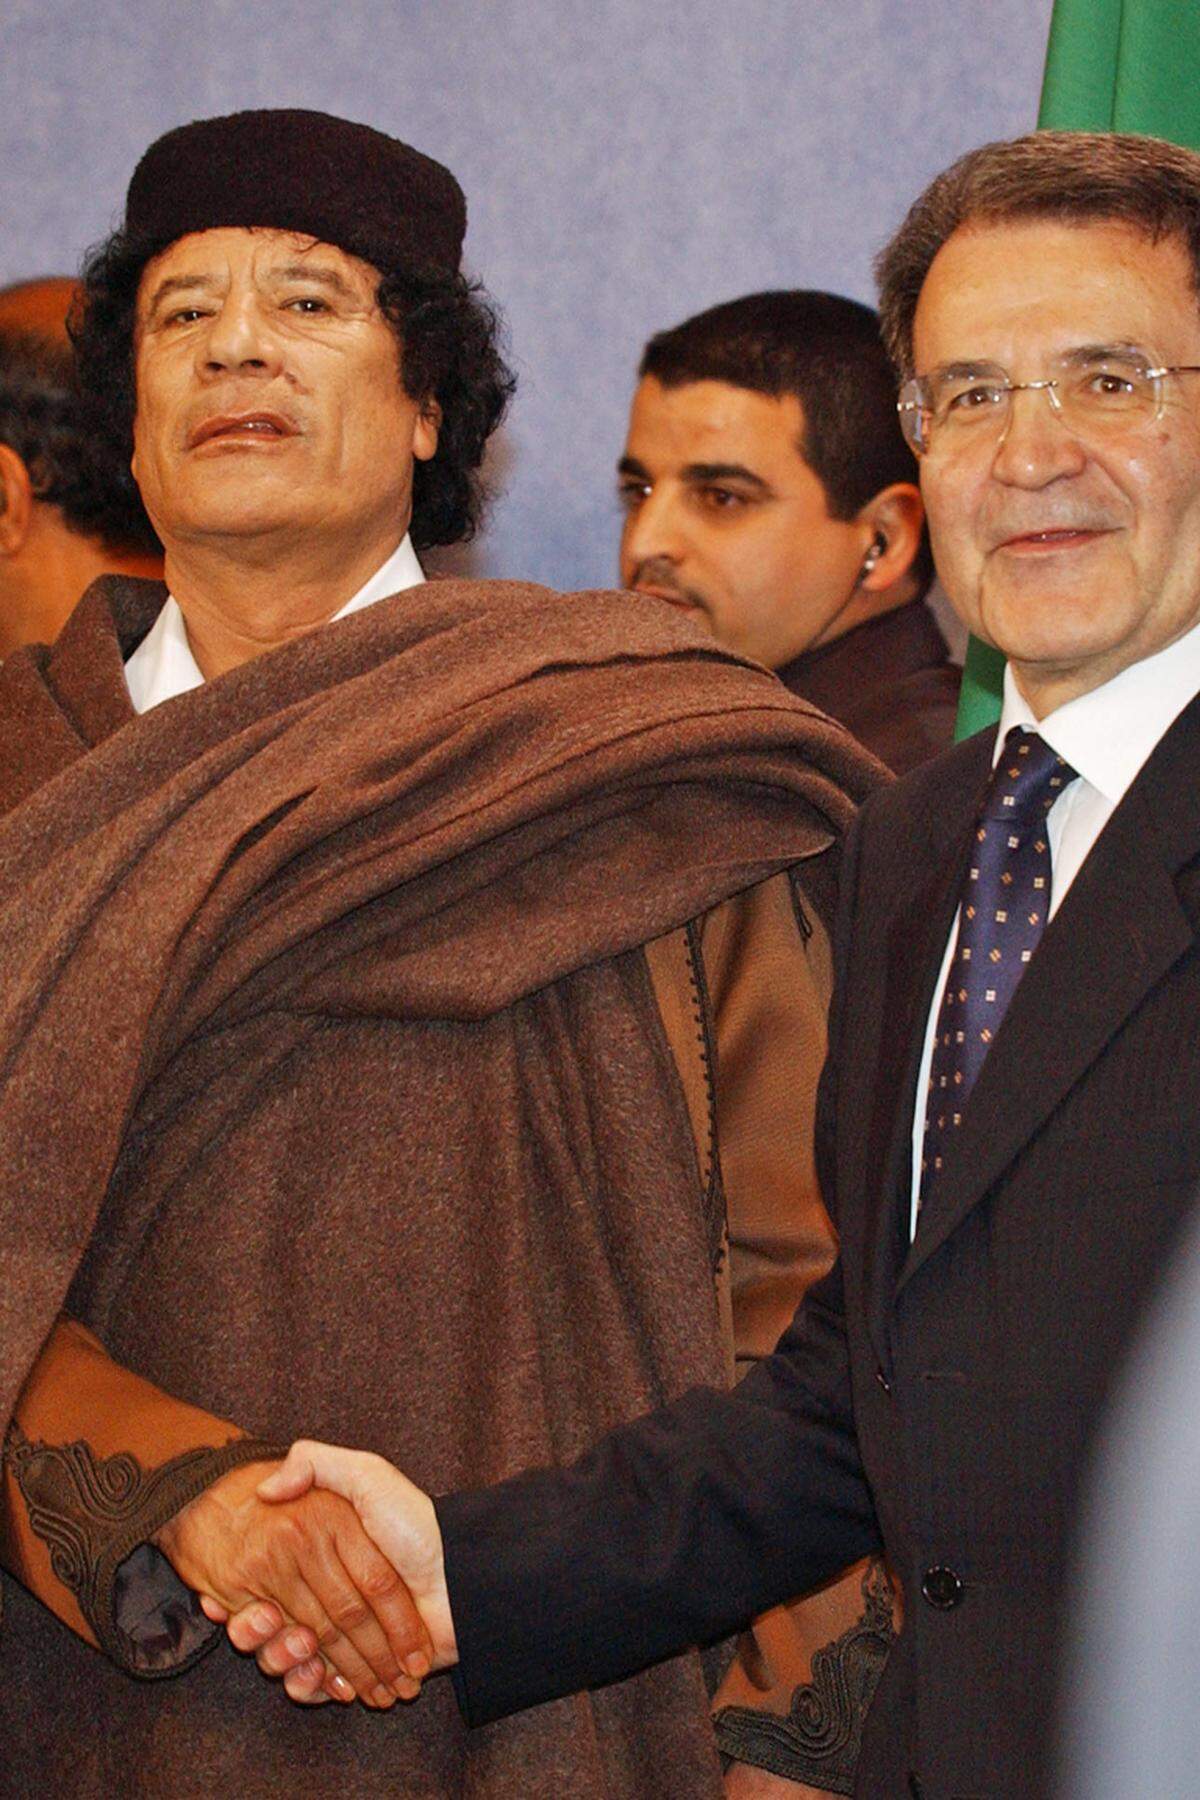 Die EU empfing den Diktator und sein Gefolge im April 2004 mit offenen Armen. Der damalige Kommissions-Präsident Romano Prodi holte den Gast sogar persönlich vom Flughafen ab - eine Ehre, die nur wenigen Besuchern zuteil wird. Gaddafi ließ in einem Brüsseler Park sein Zelt aufbauen und verkündete: "Libyen ist die Brücke nach Afrika, Libyen ist die Brücke nach Europa".